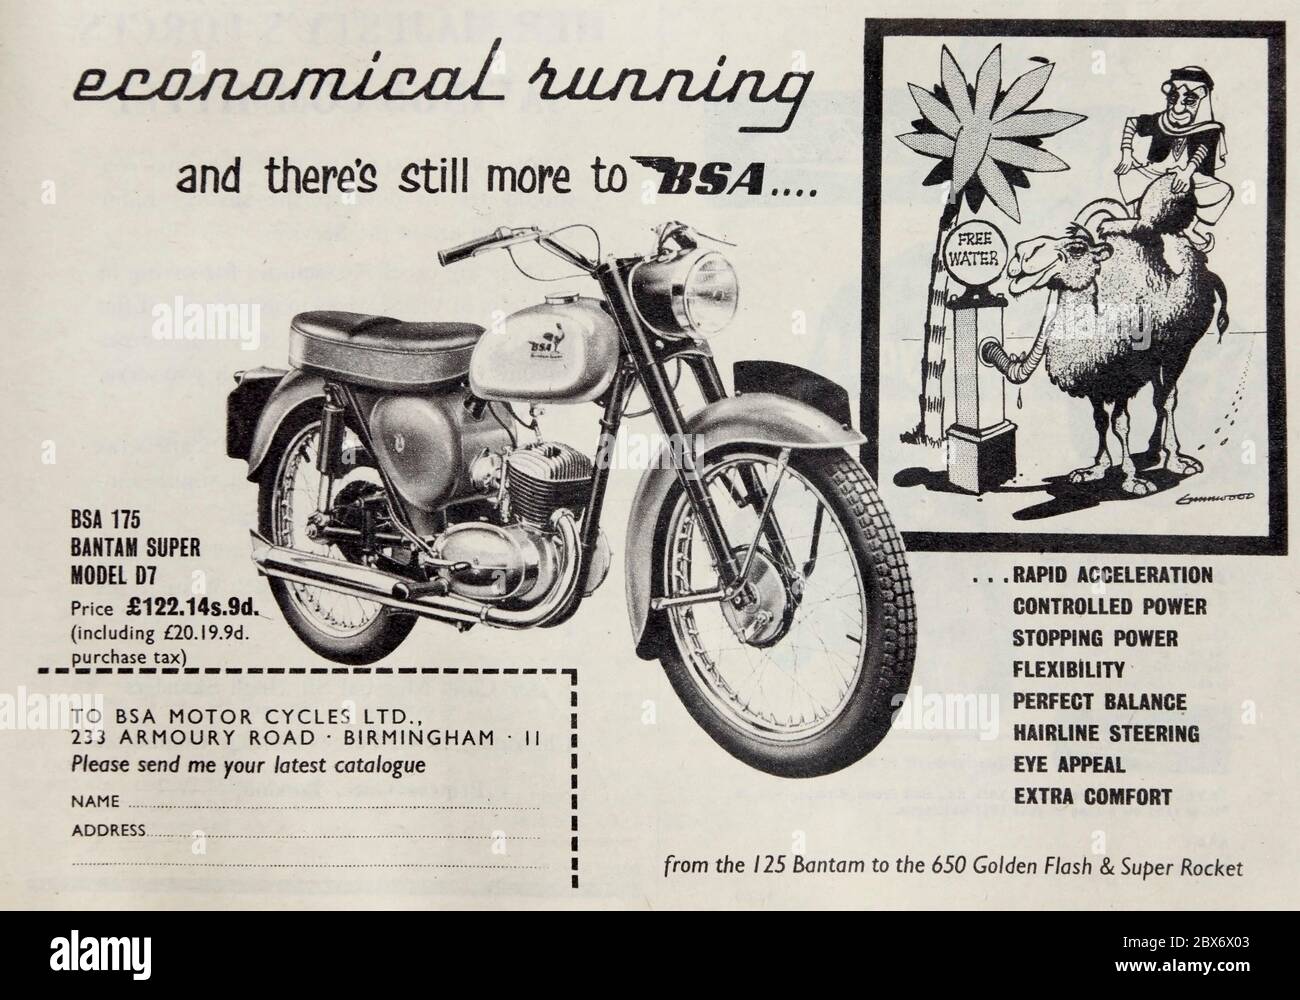 Publicité vintage pour la BSA 175cc Bantam Super modèle D7 moto. Banque D'Images